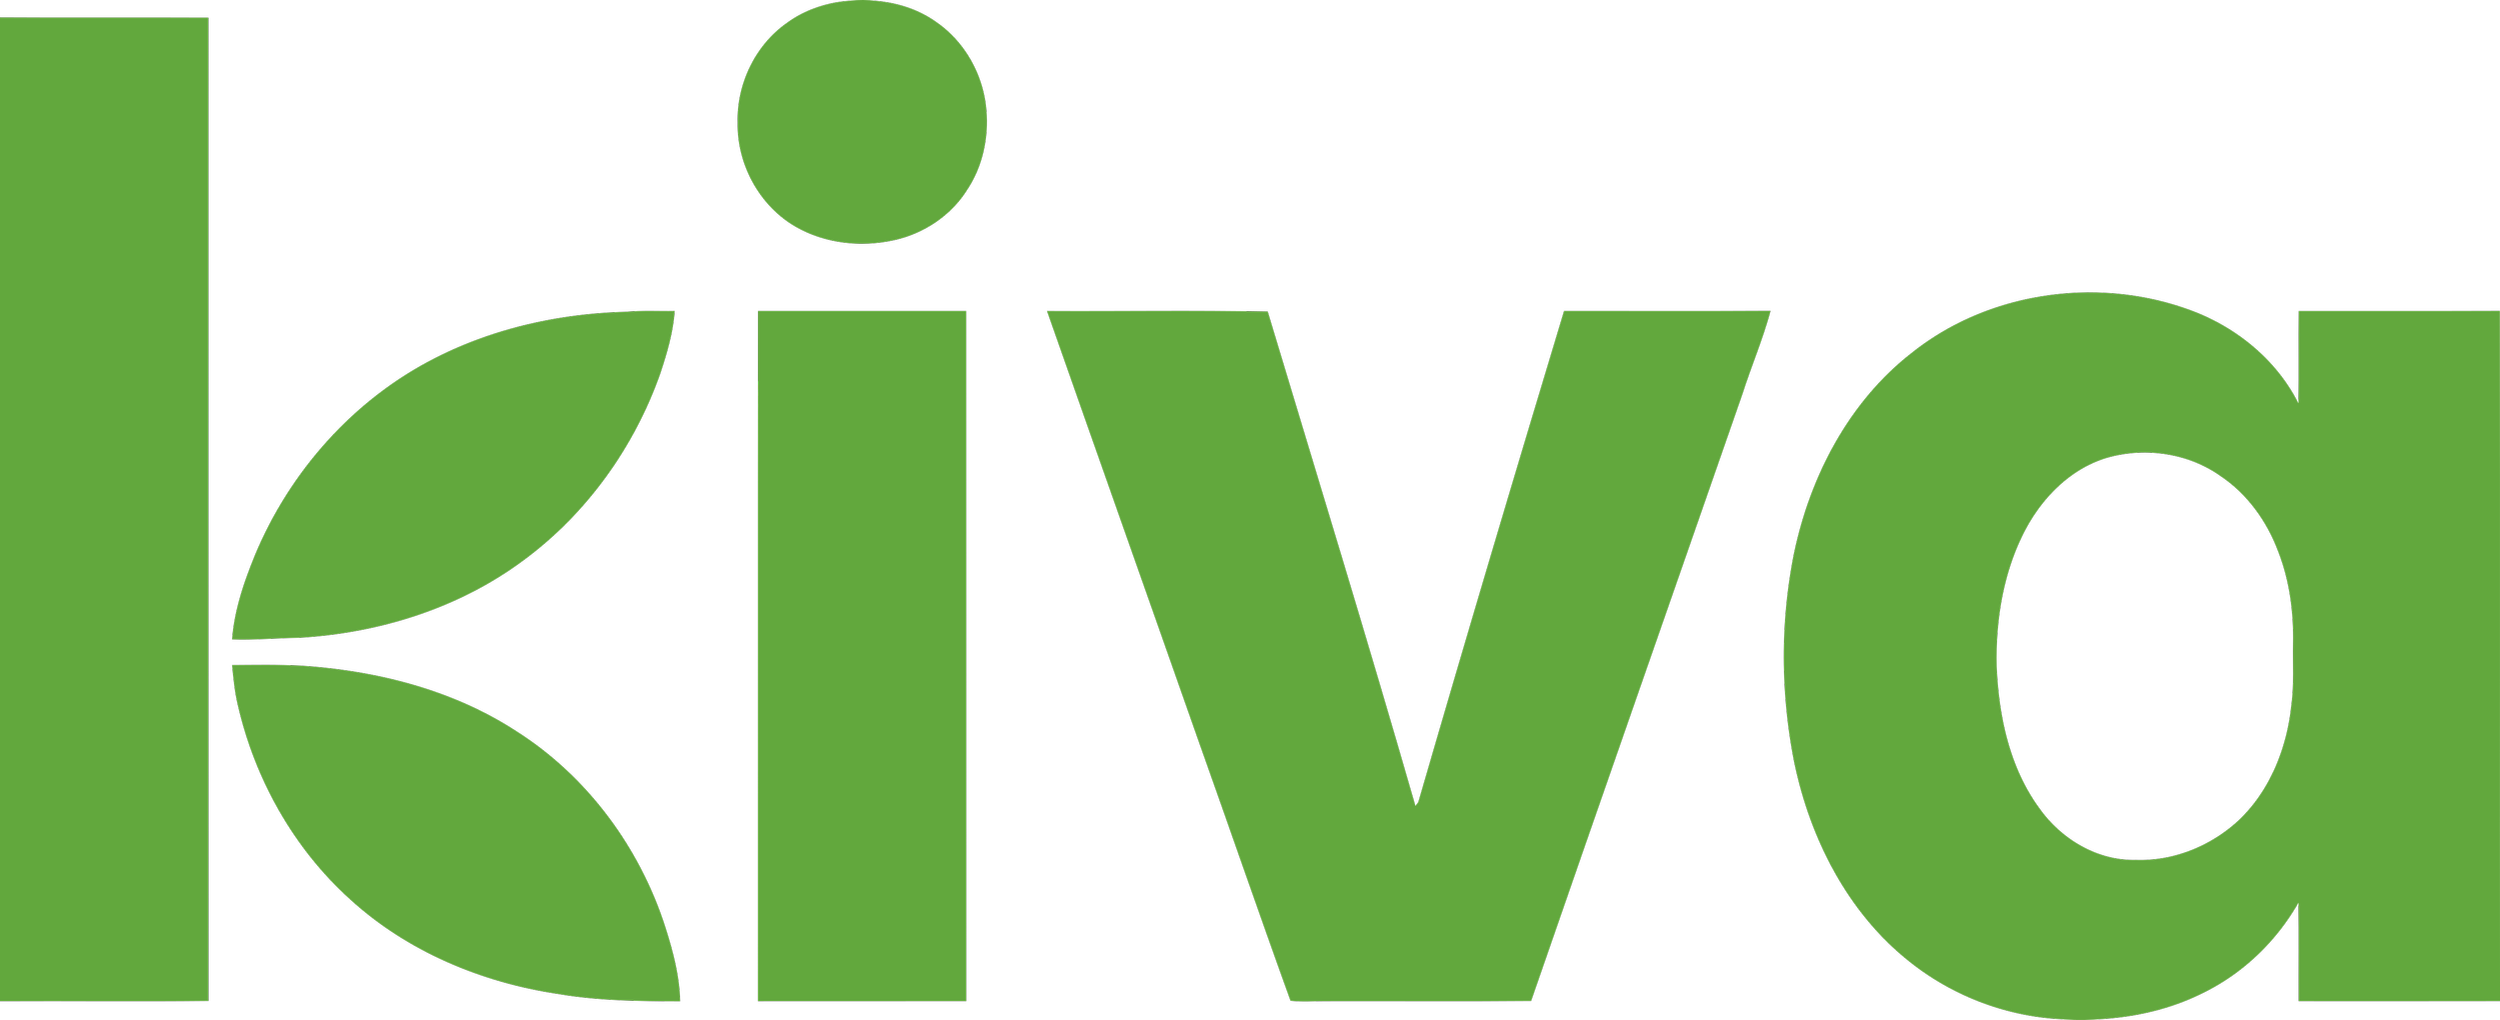 Kiva_logo.png